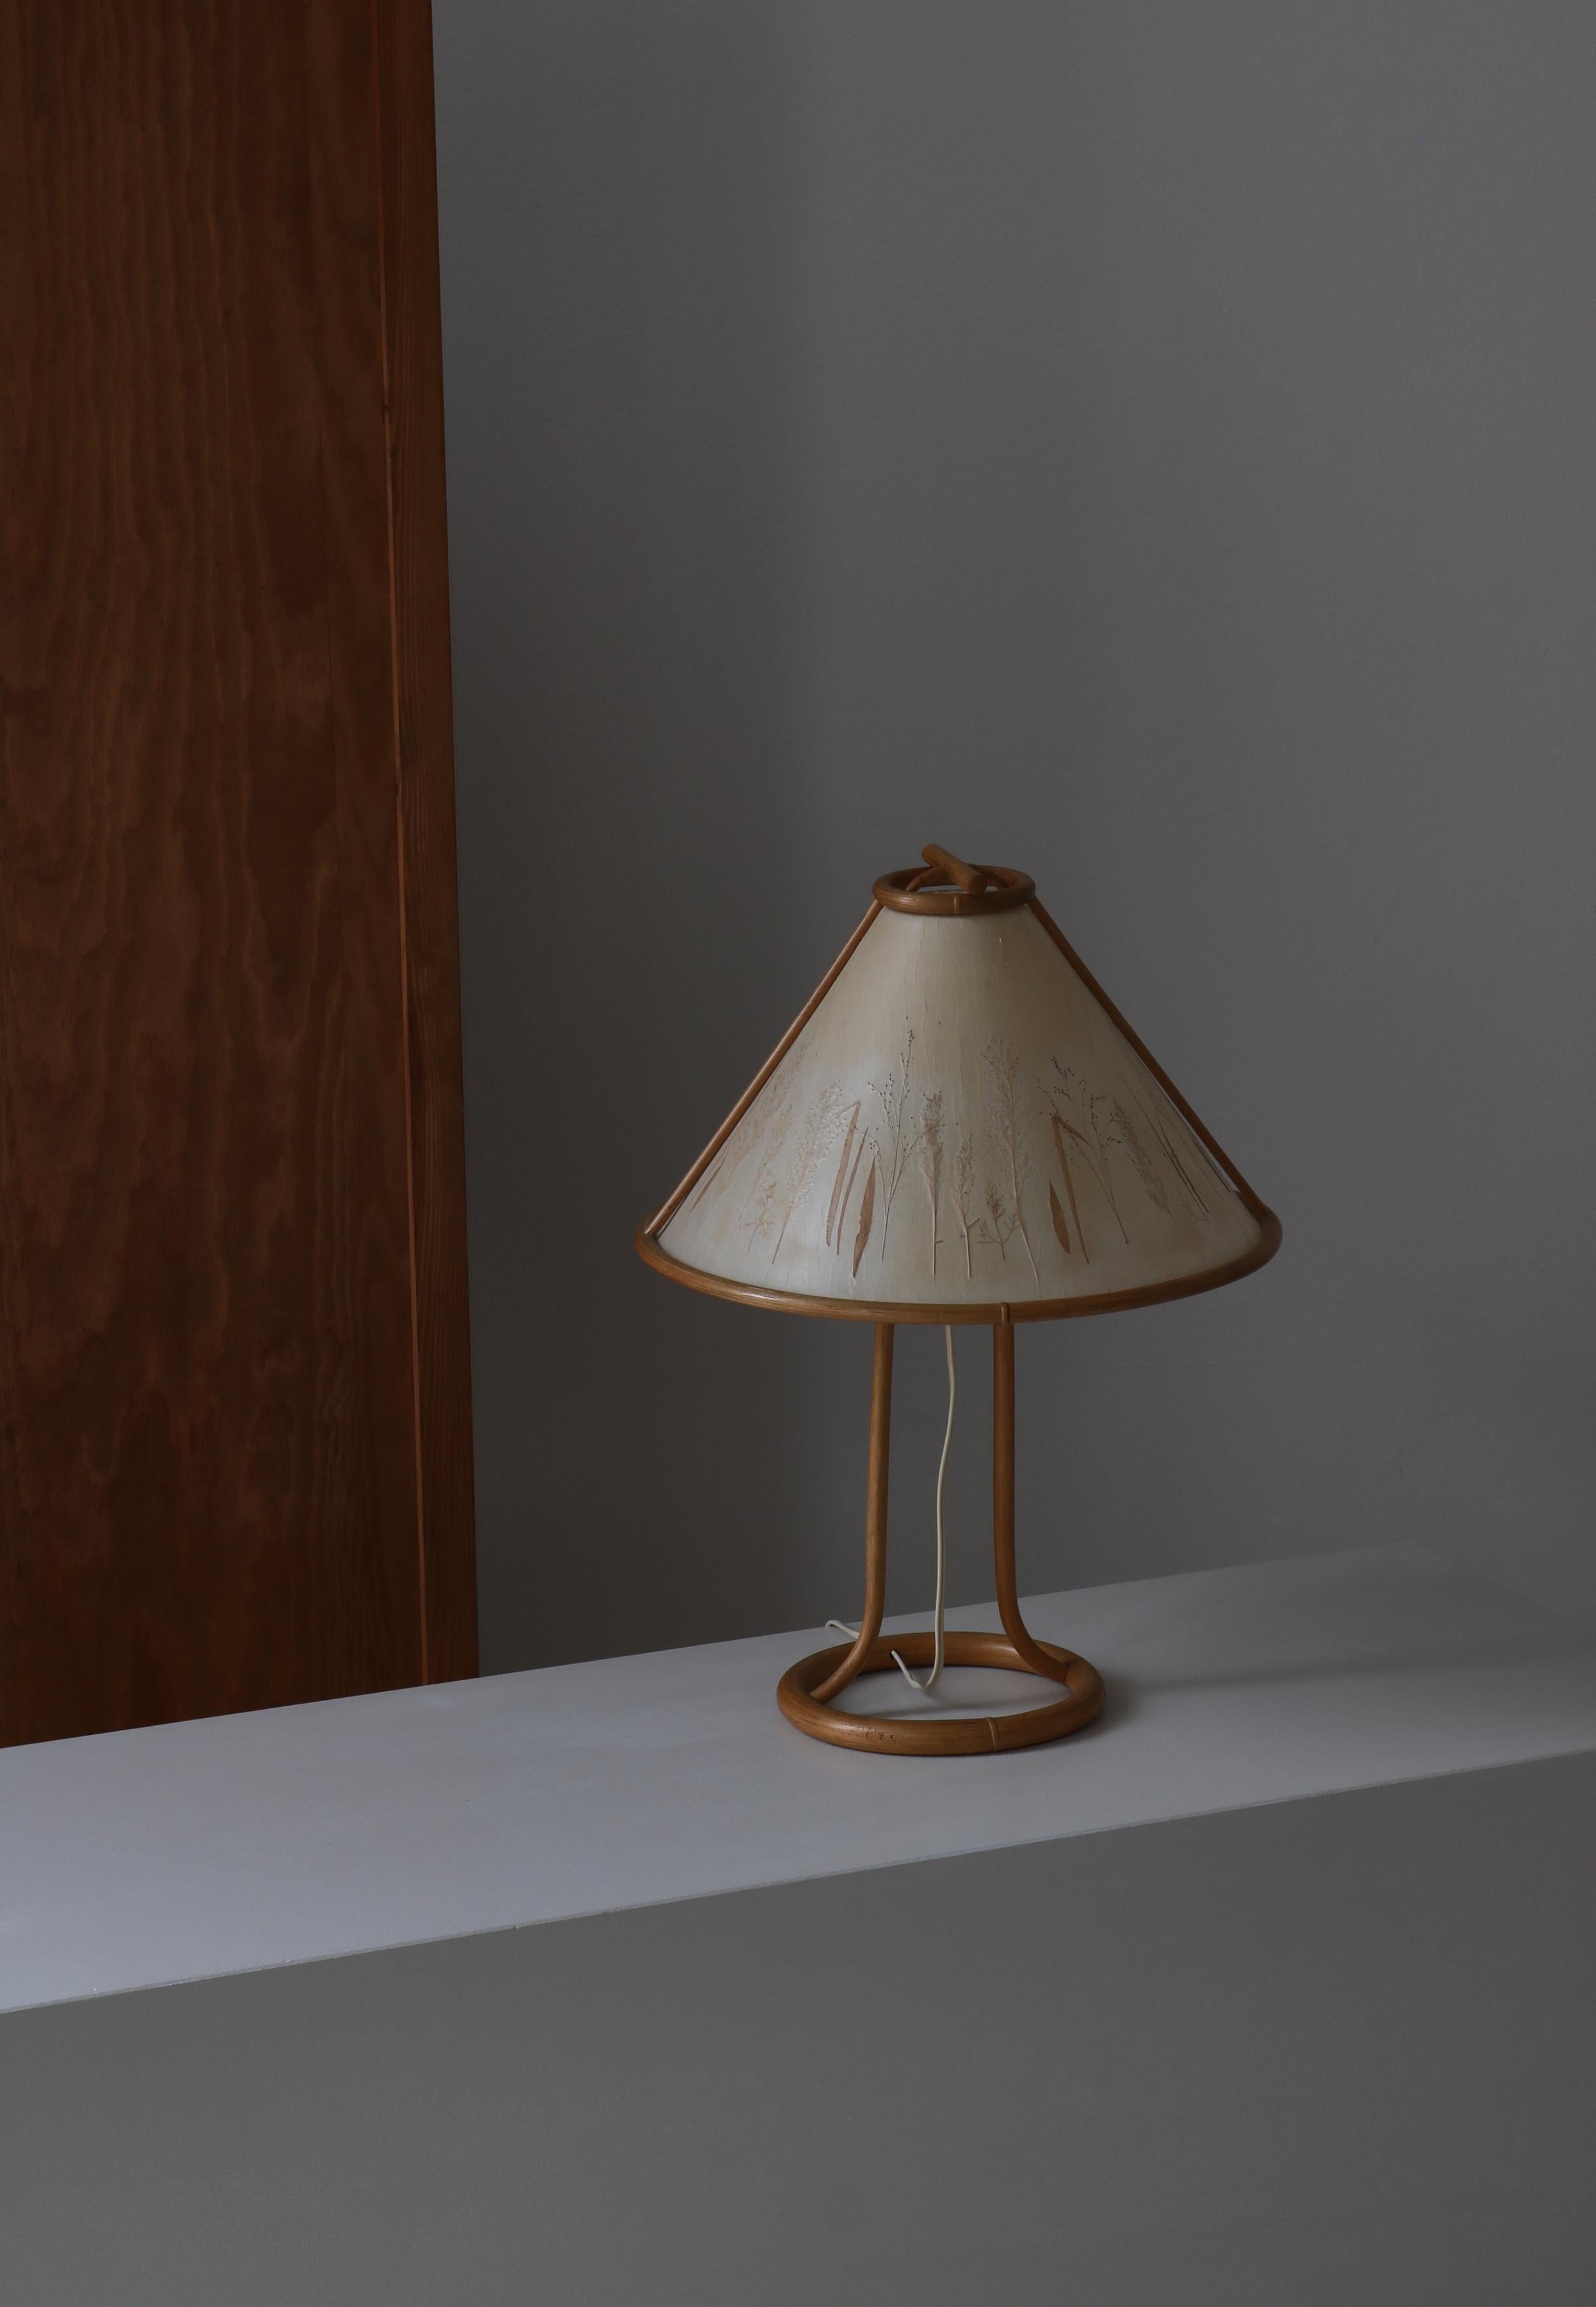 Charmante lampe de table vintage de style wabi-sabi fabriquée à la main au Danemark dans les années 1950. La base est en bambou courbé et l'abat-jour fait à la main est recouvert de papier pergamyn et décoré de plantes pressées. Dans le style de